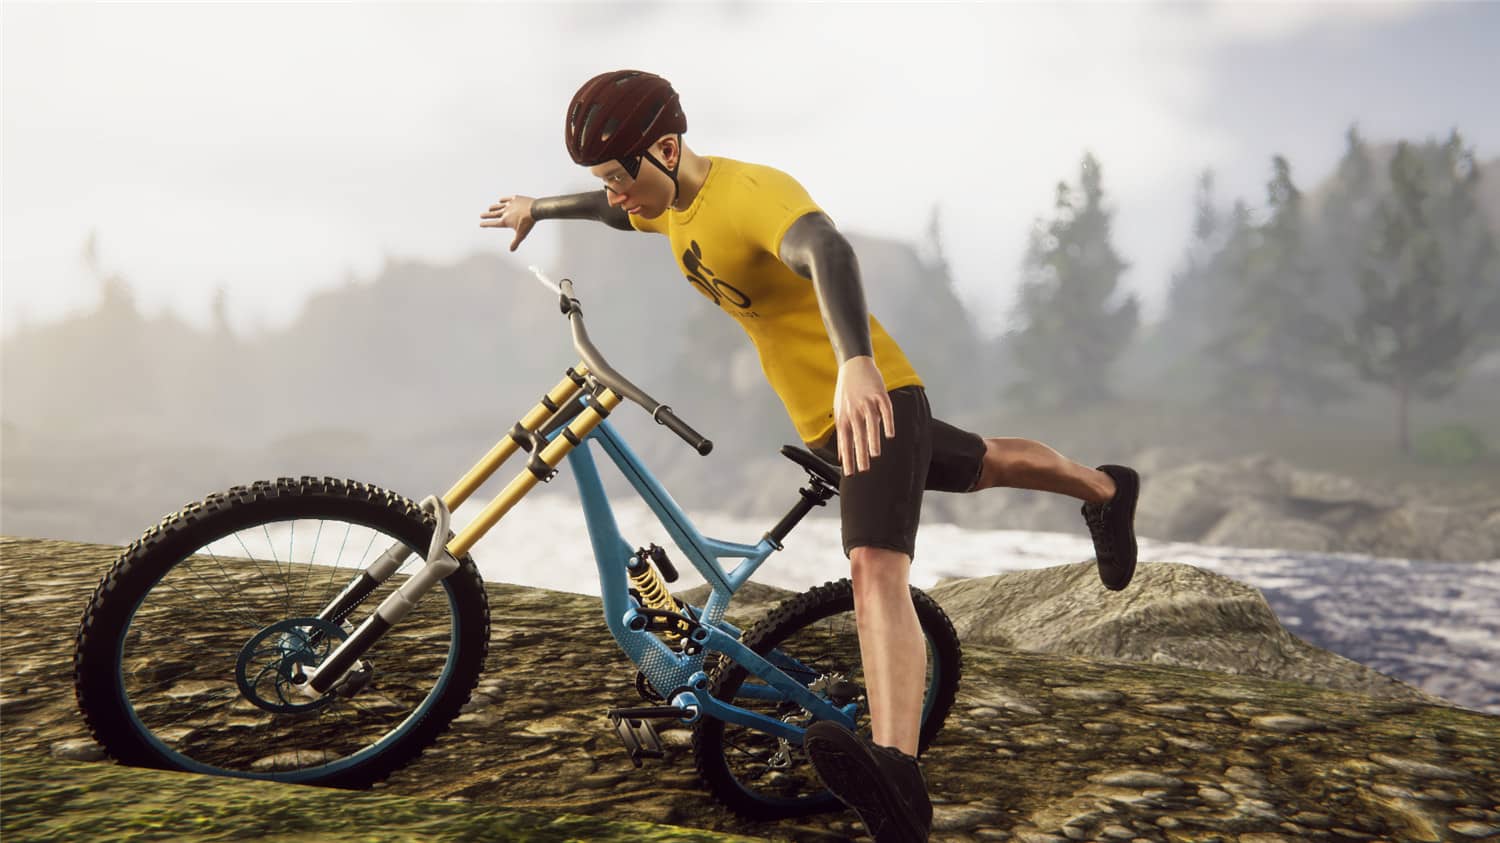 自行车骑手模拟器/Bicycle Rider Simulator插图5